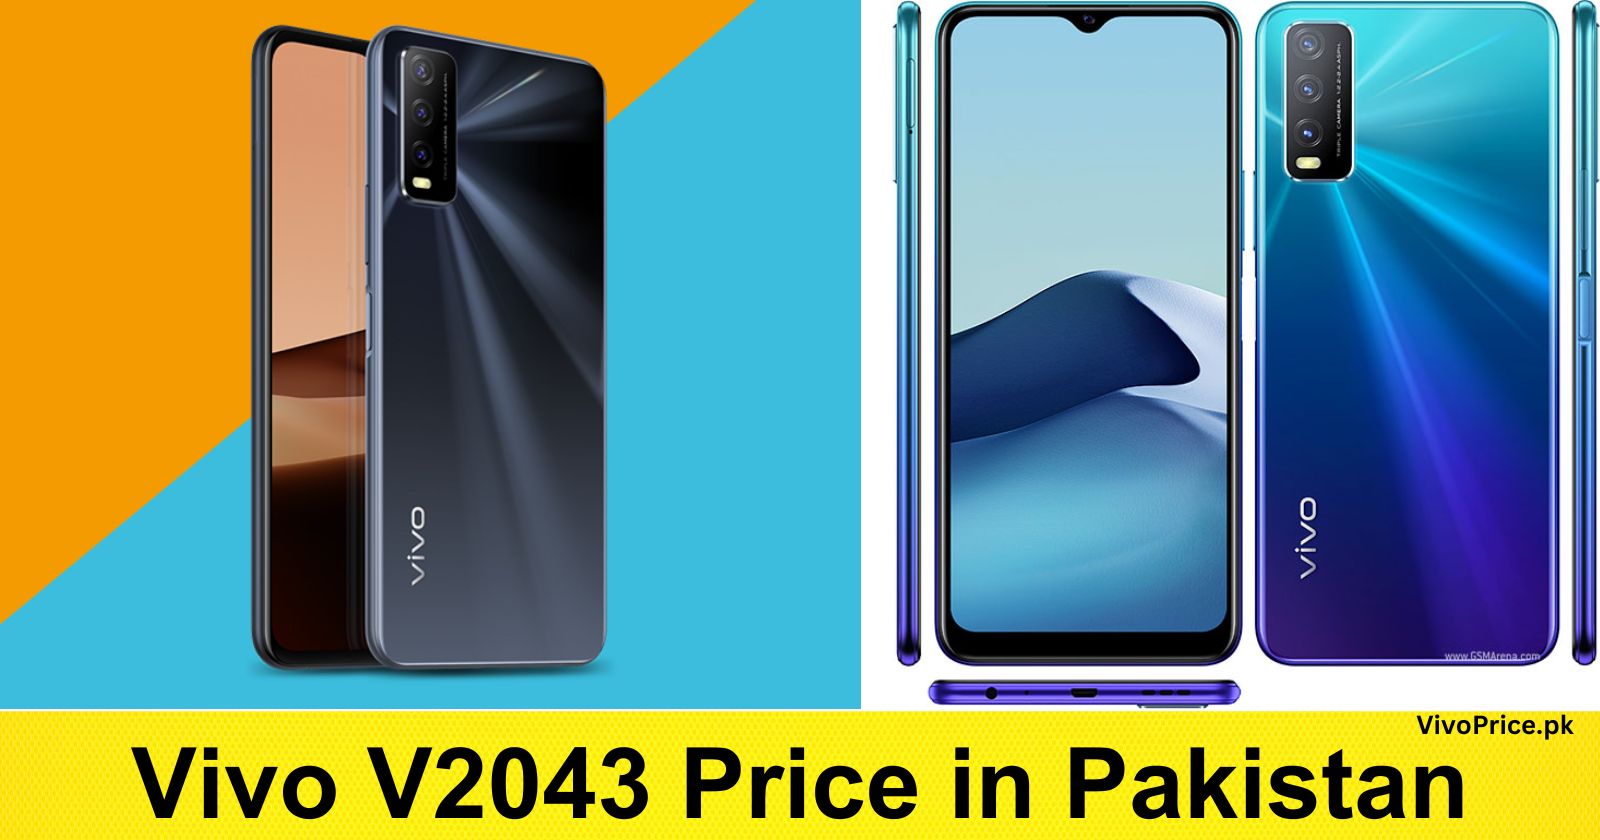 Vivo V2043 Price in Pakistan | VivoPrice.pk